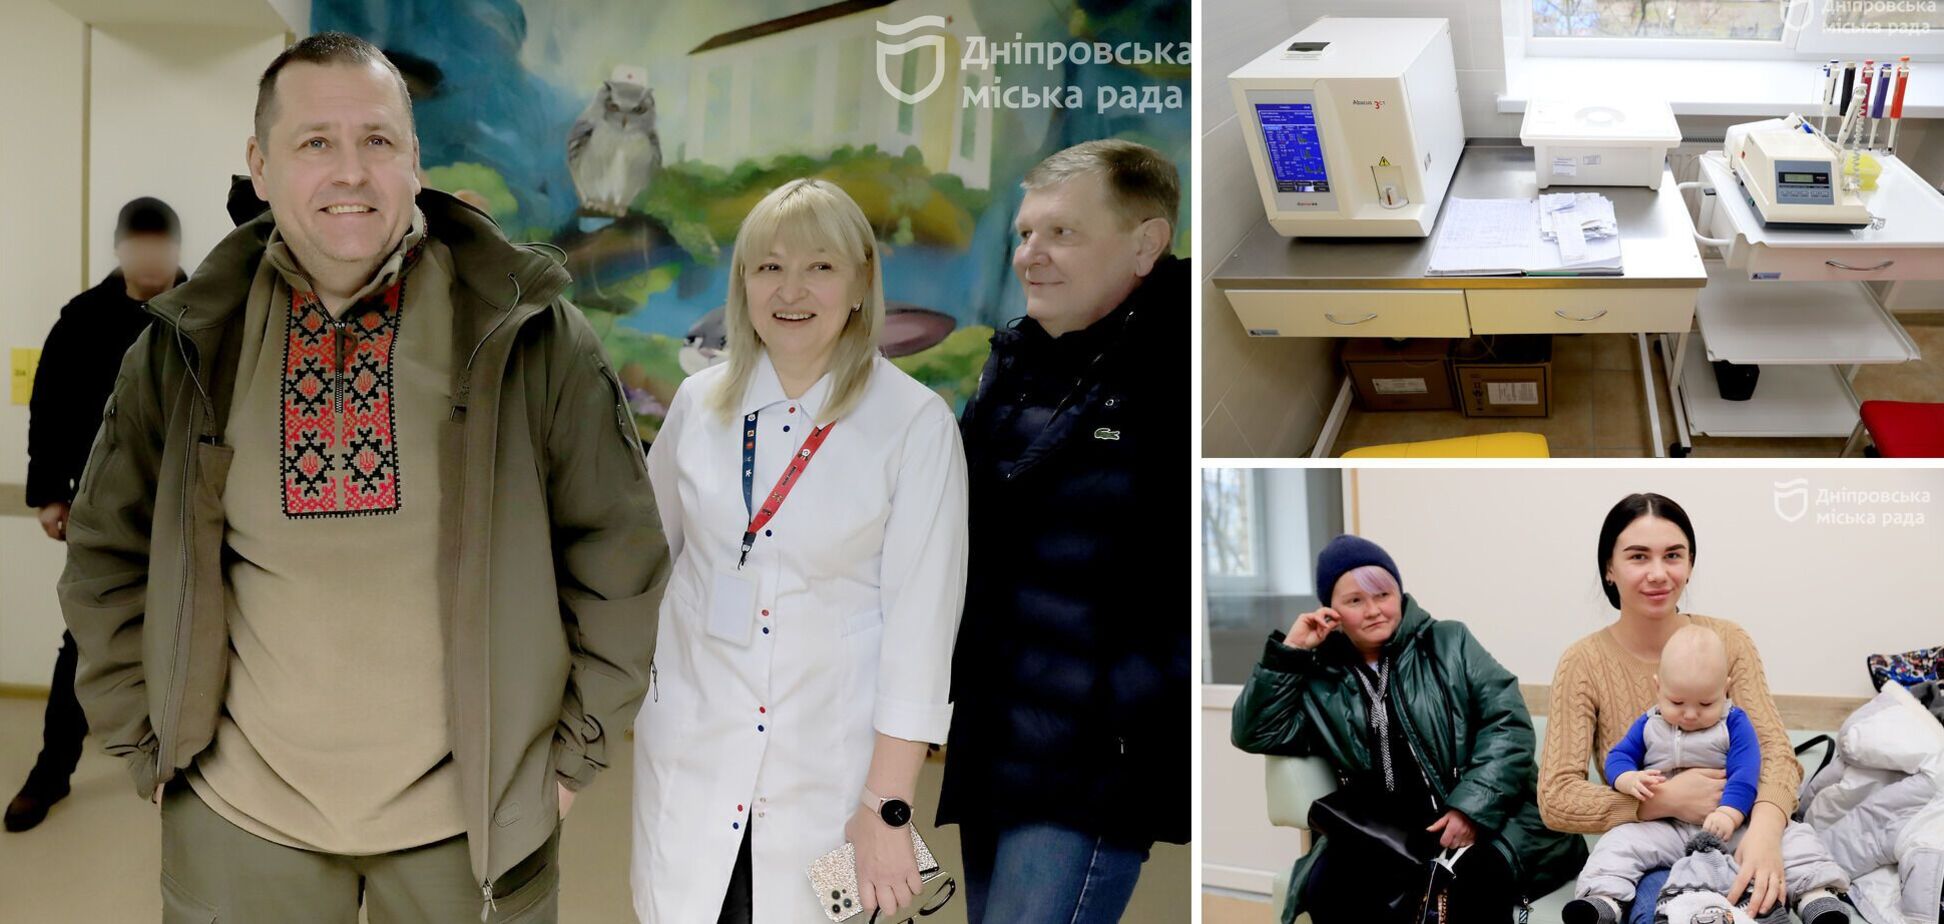 Філатов: 'Дніпро продовжує розвивати медицину. Цьогоріч попри війну місто відкрило 5 амбулаторій'